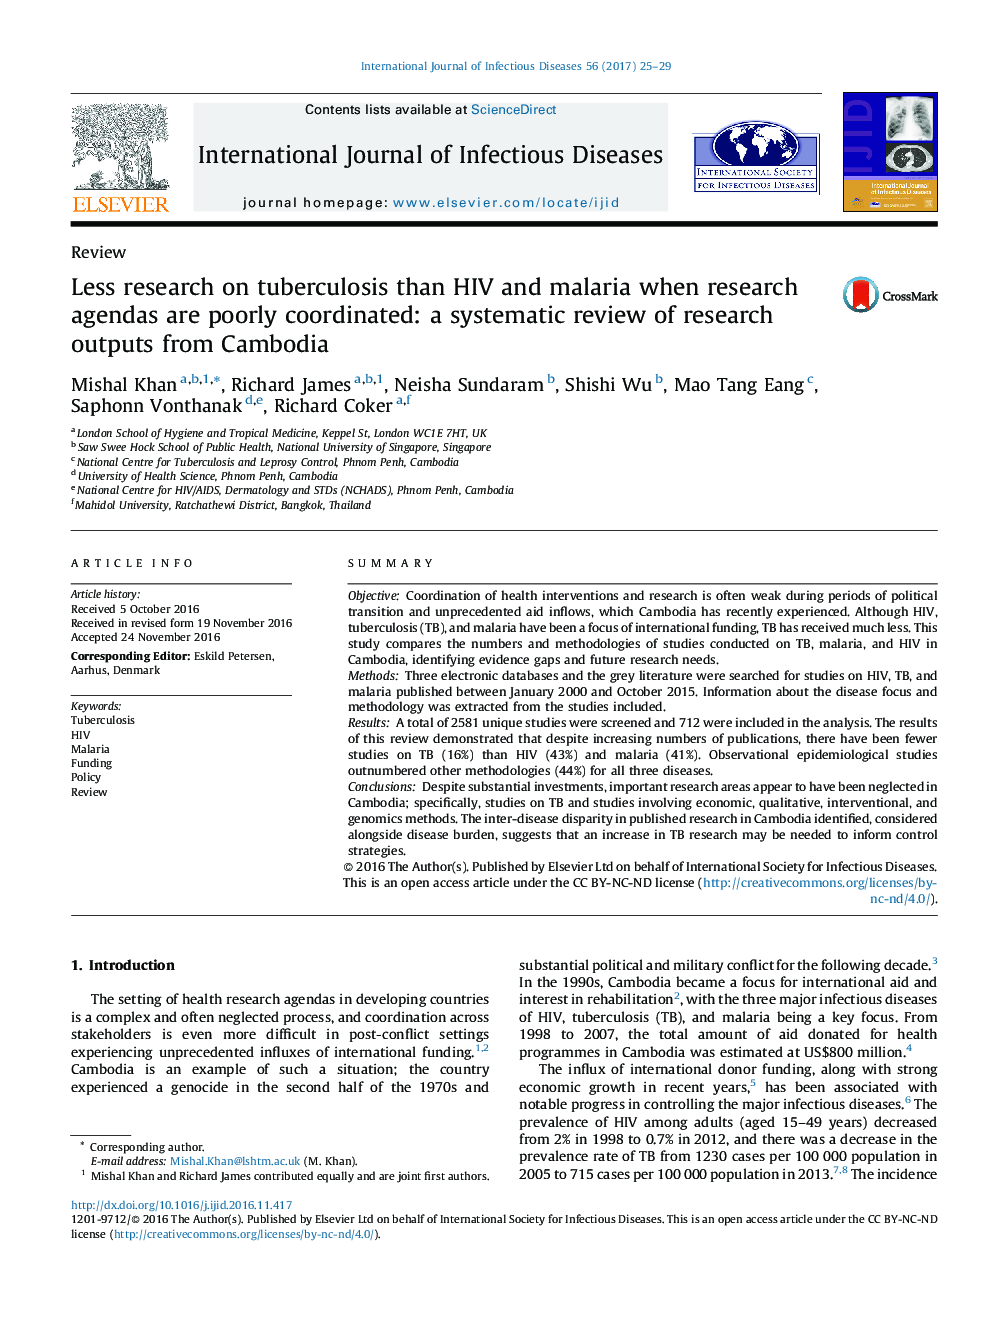 تحقیقات کمتر در مورد سل در مقایسه با اچ آی وی و مالاریا زمانی که برنامه های پژوهشی کم هماهنگ هستند: بررسی سیستماتیک از نتایج تحقیقات از کامبوج 